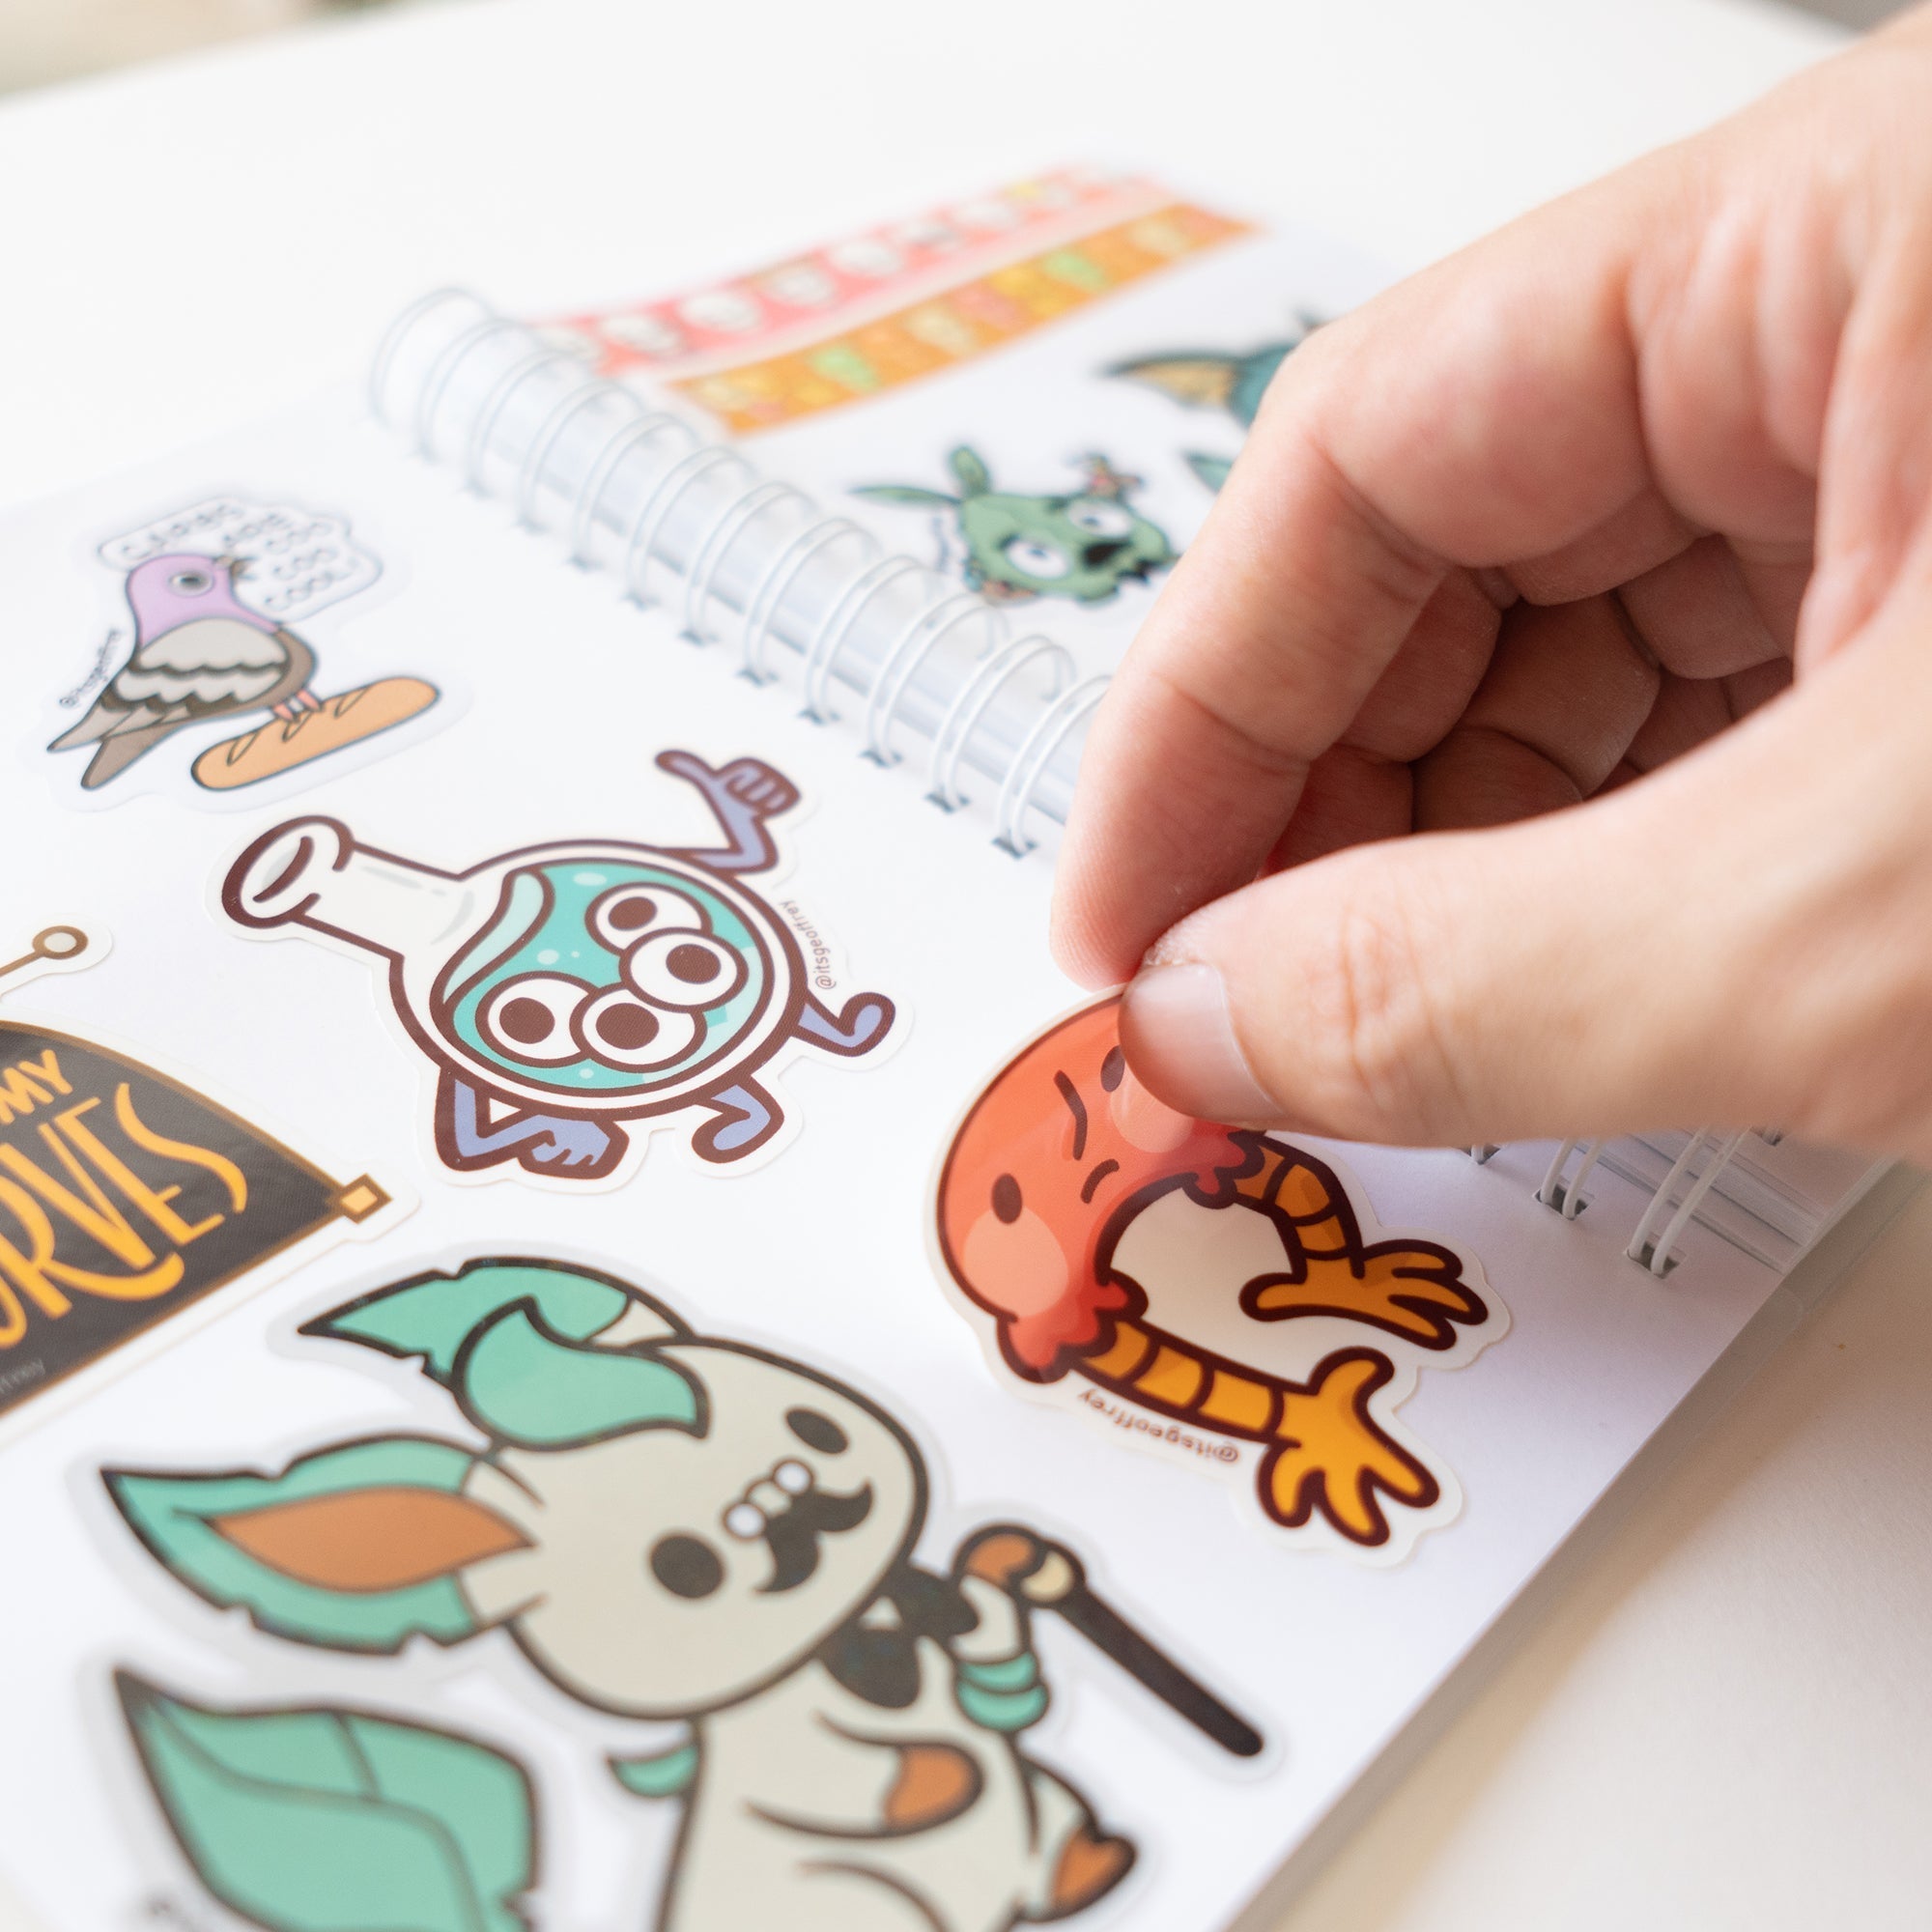 MD The Fanciest Reusable Sticker Book – Geoffrey Siu Art